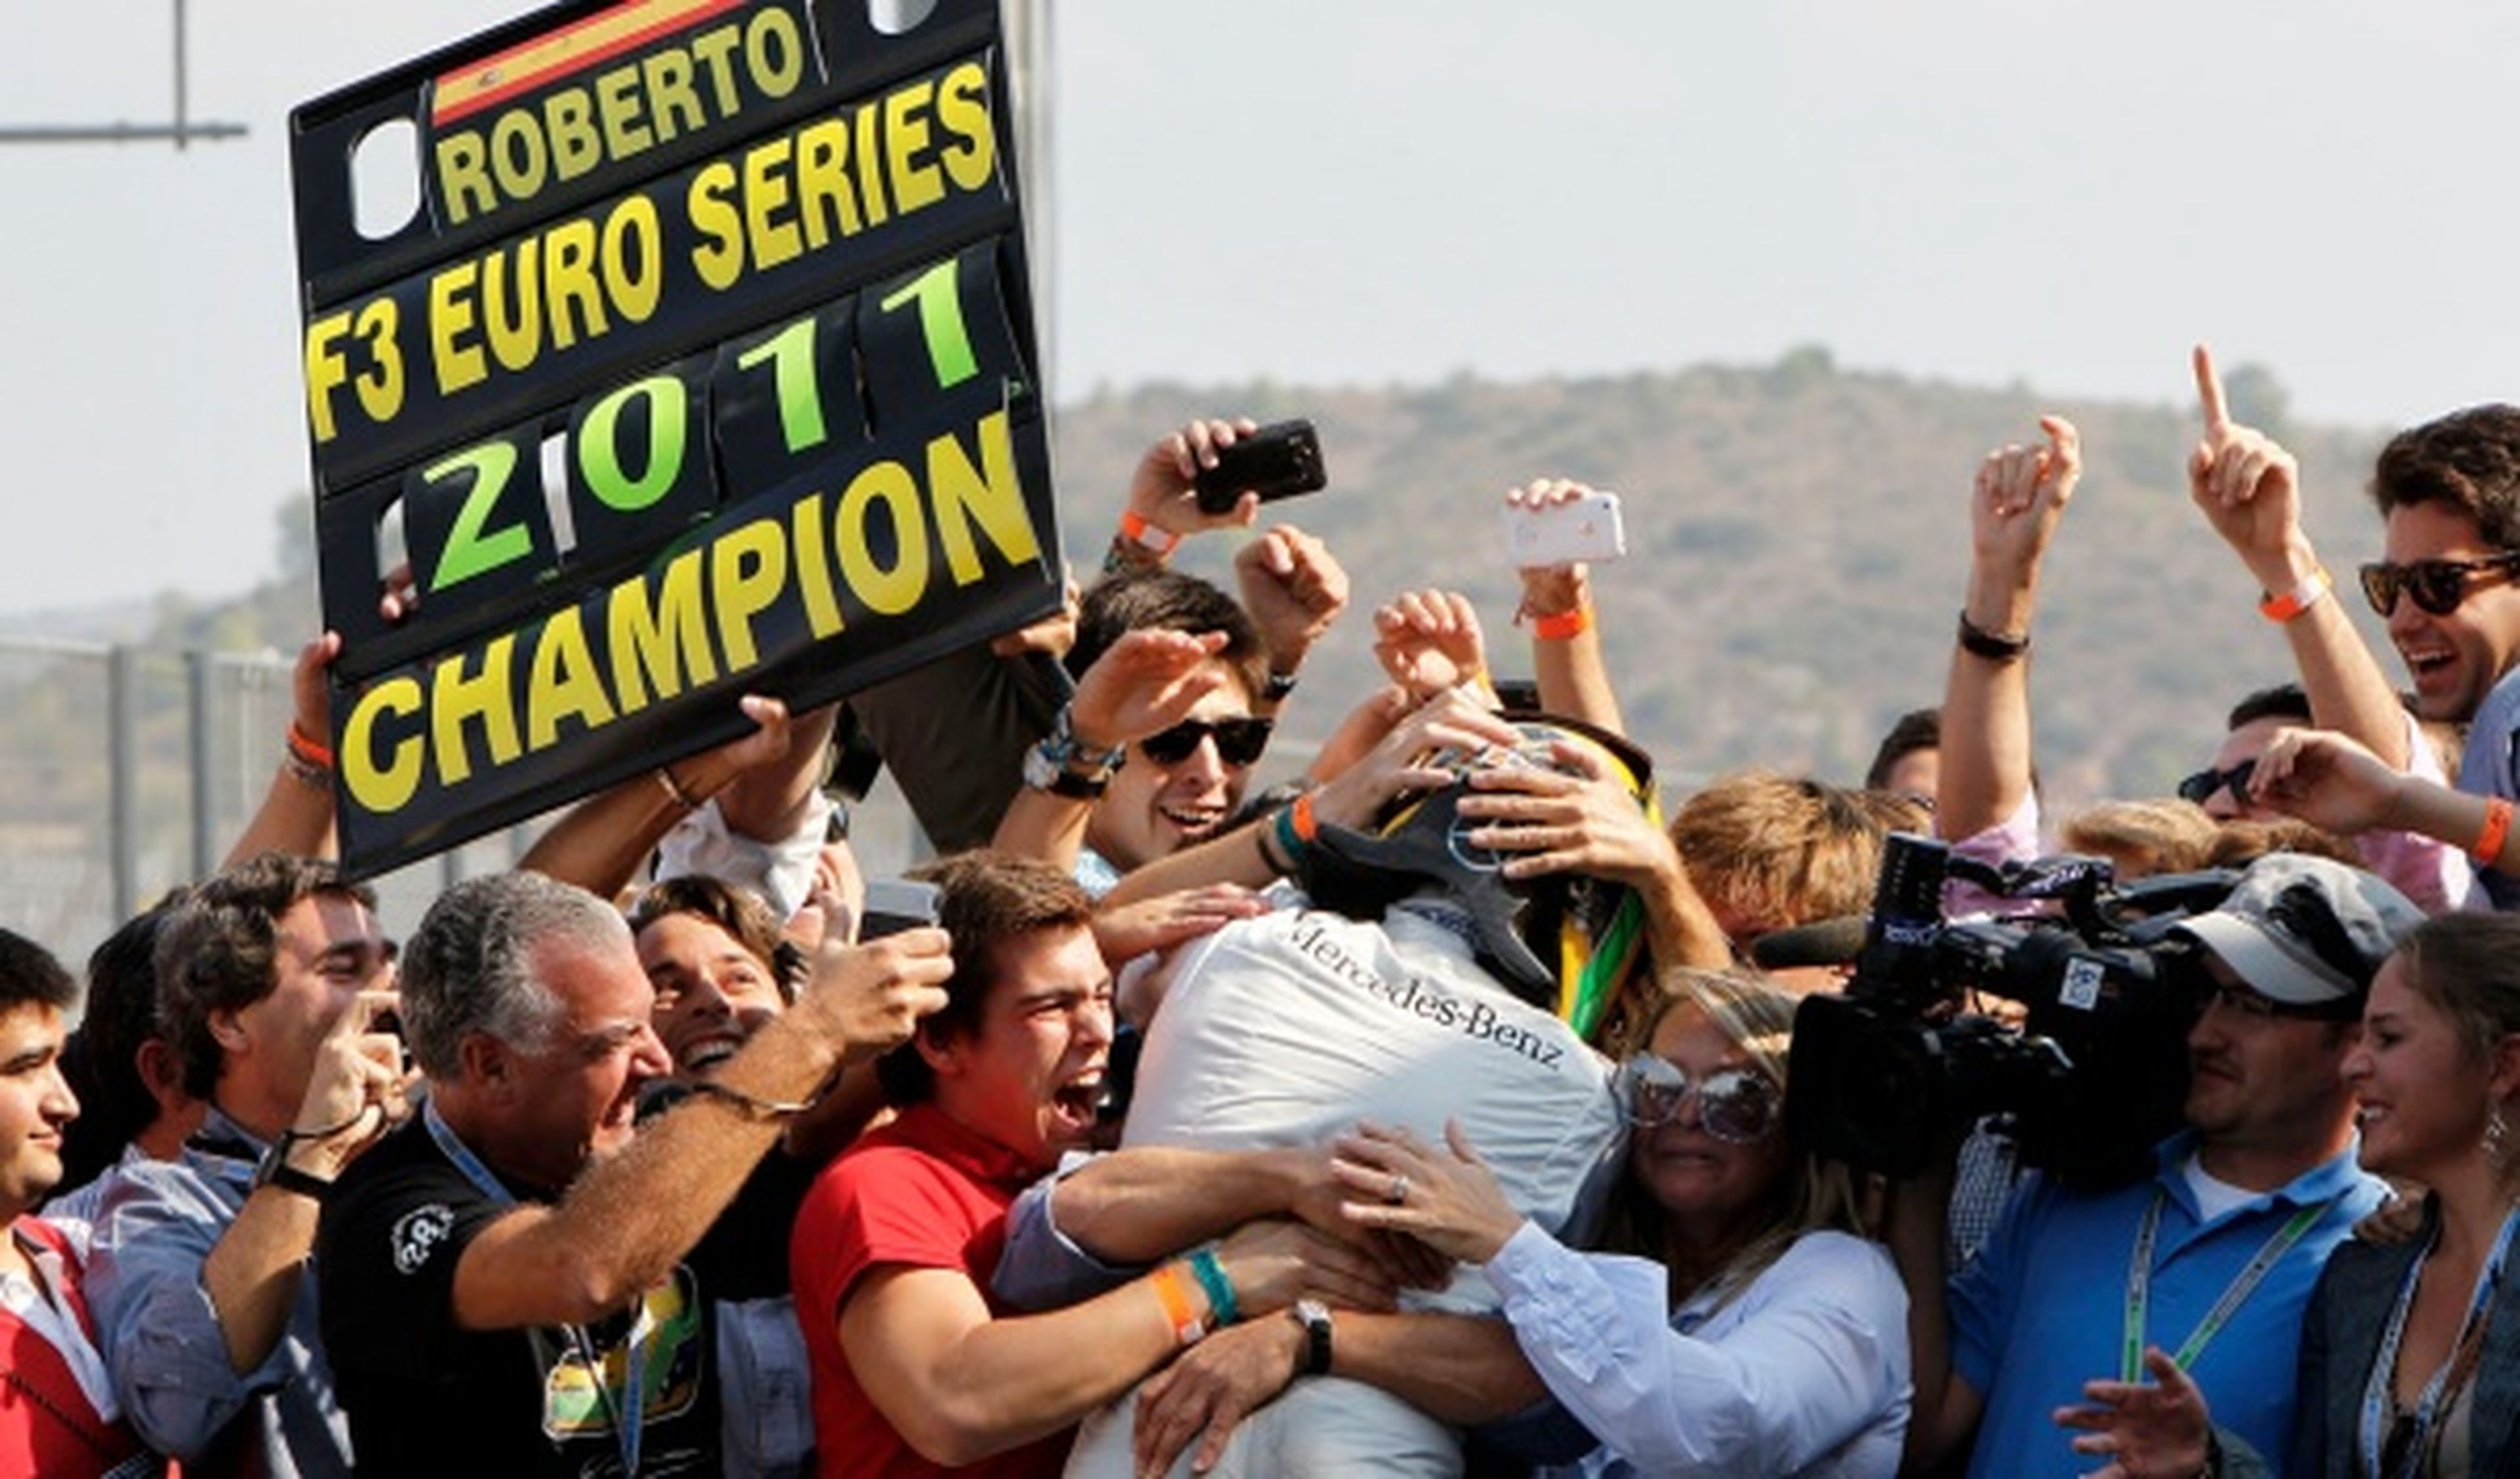 Roberto Merhi, Campeón de las Euroseries de F3